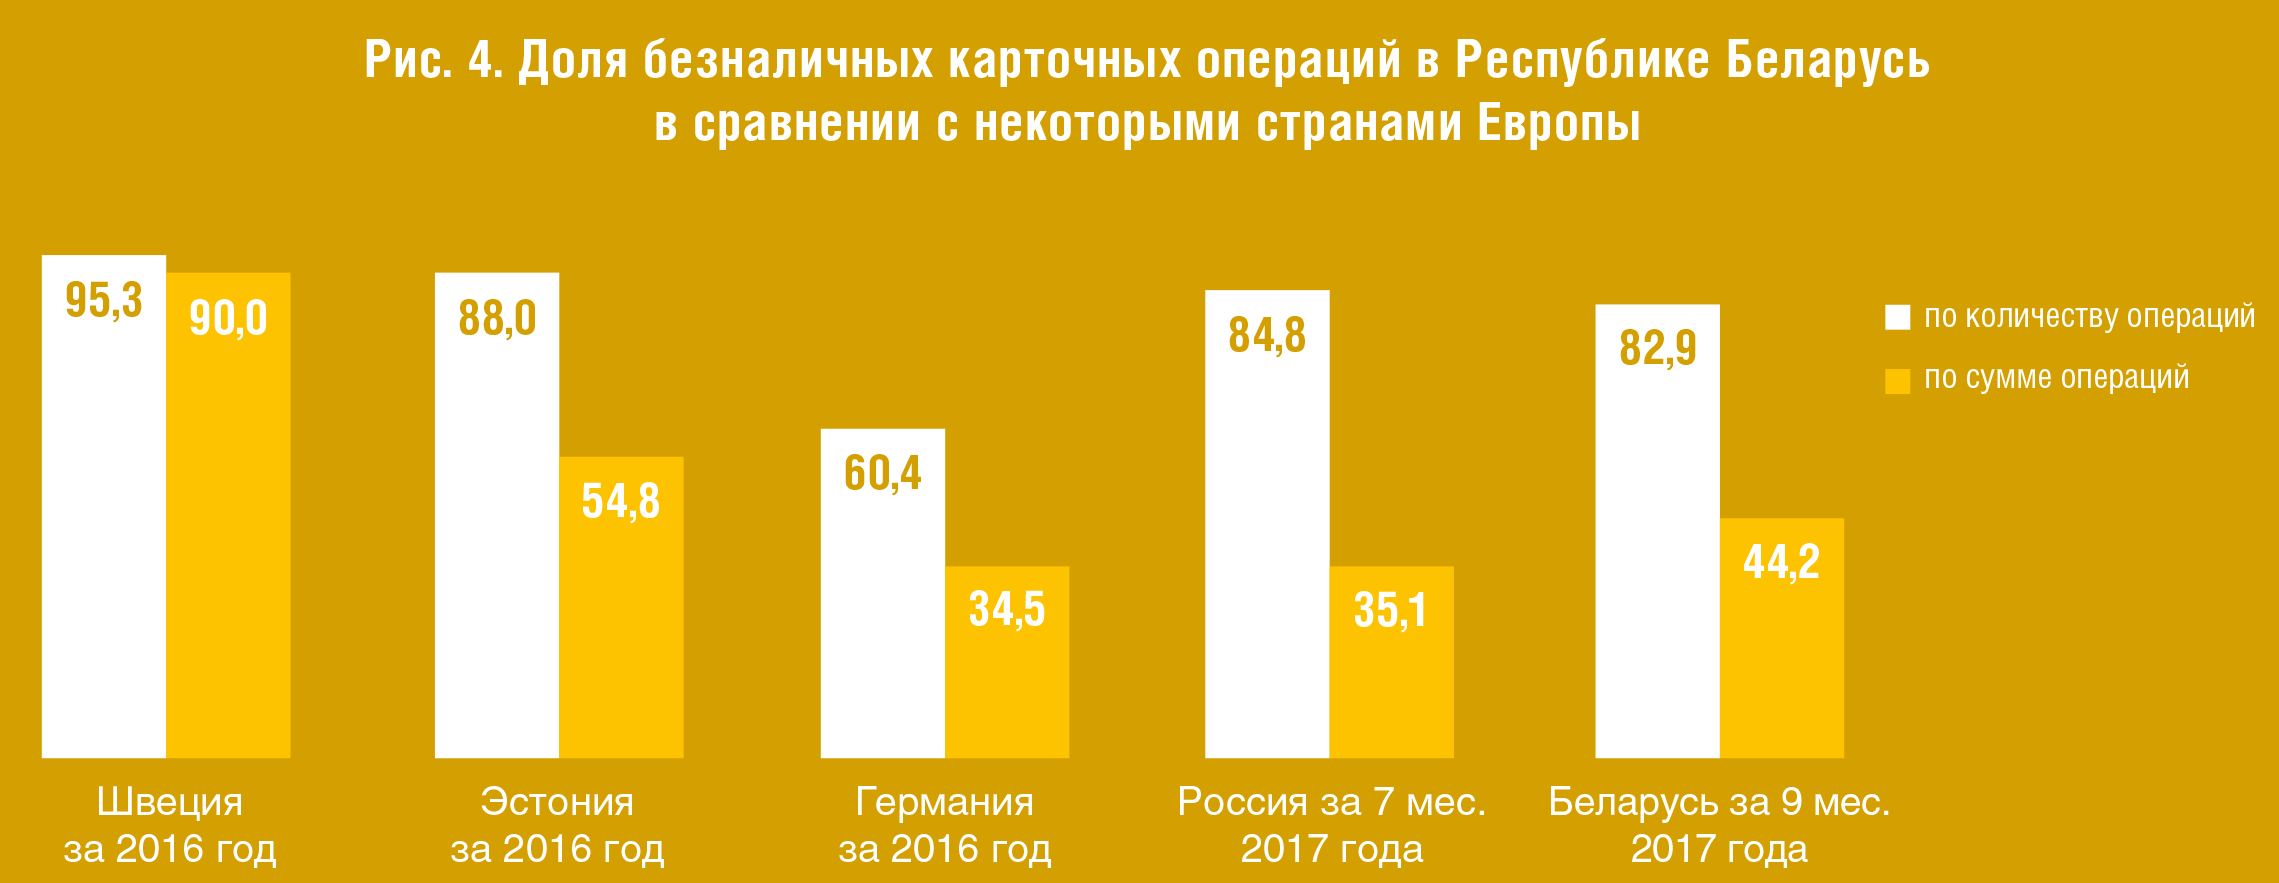 Платежная система Республики Беларусь. Текущее состояние и перспективы развития - рис.5